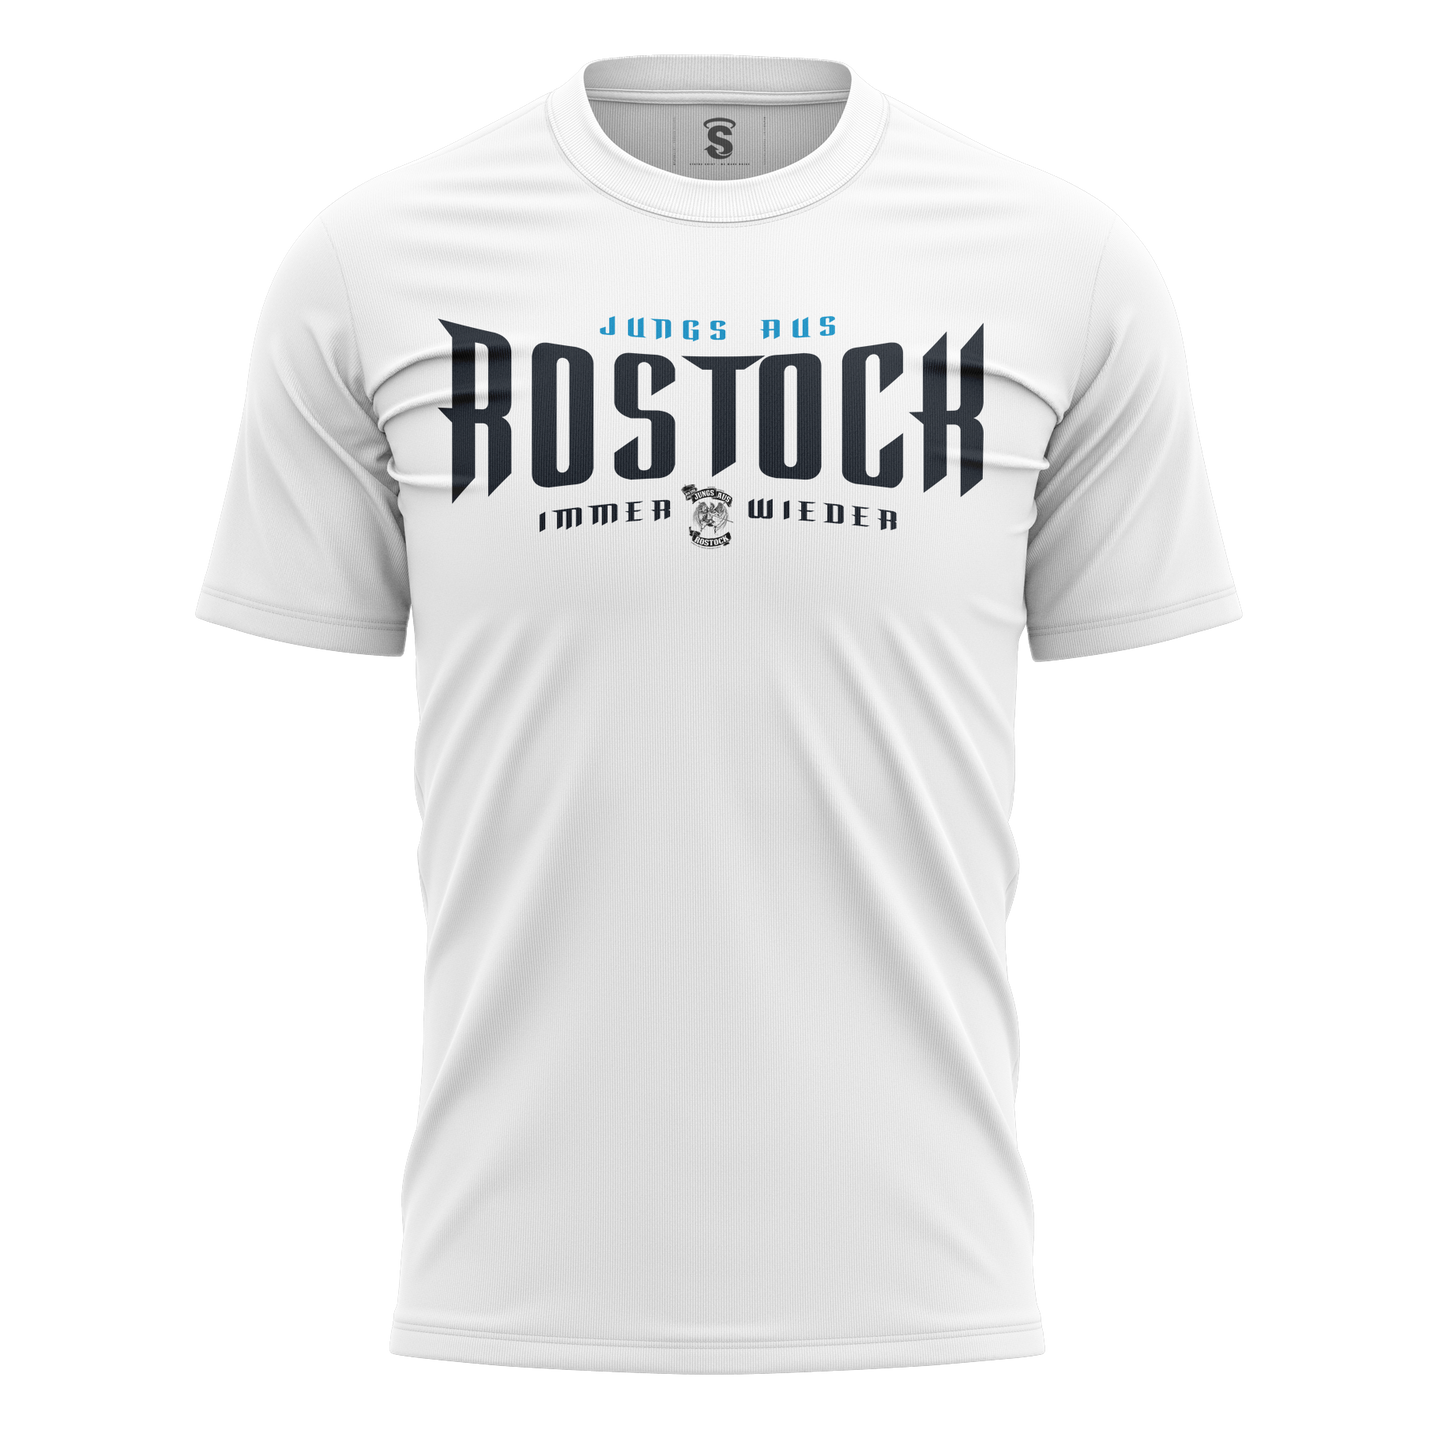 HK015 T-Shirt Rostock Ostsee Power